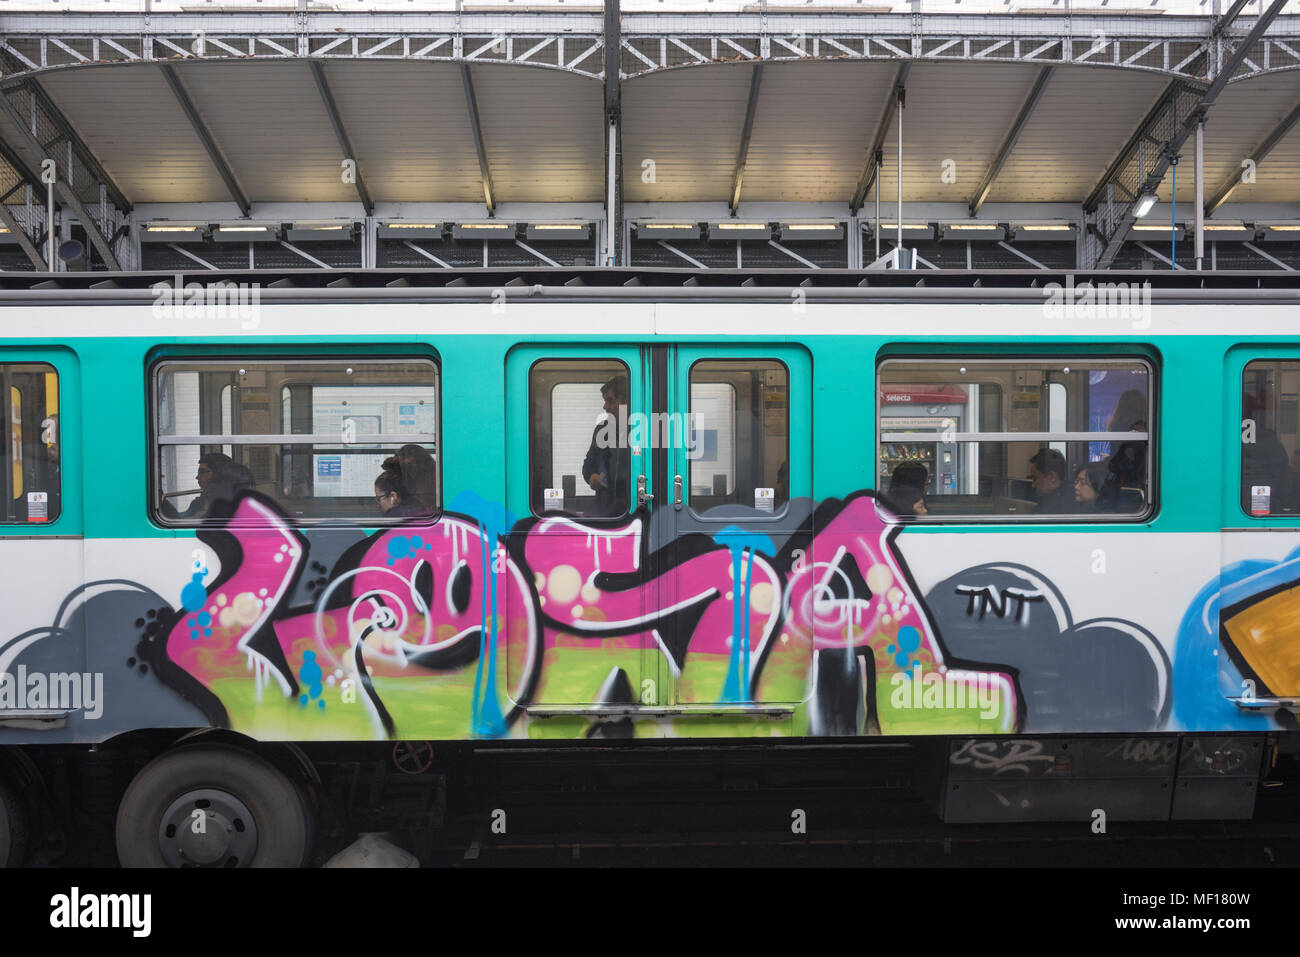 Metro train avec des graffitis, La Motte Picquet - Grenelle, Paris, France Banque D'Images